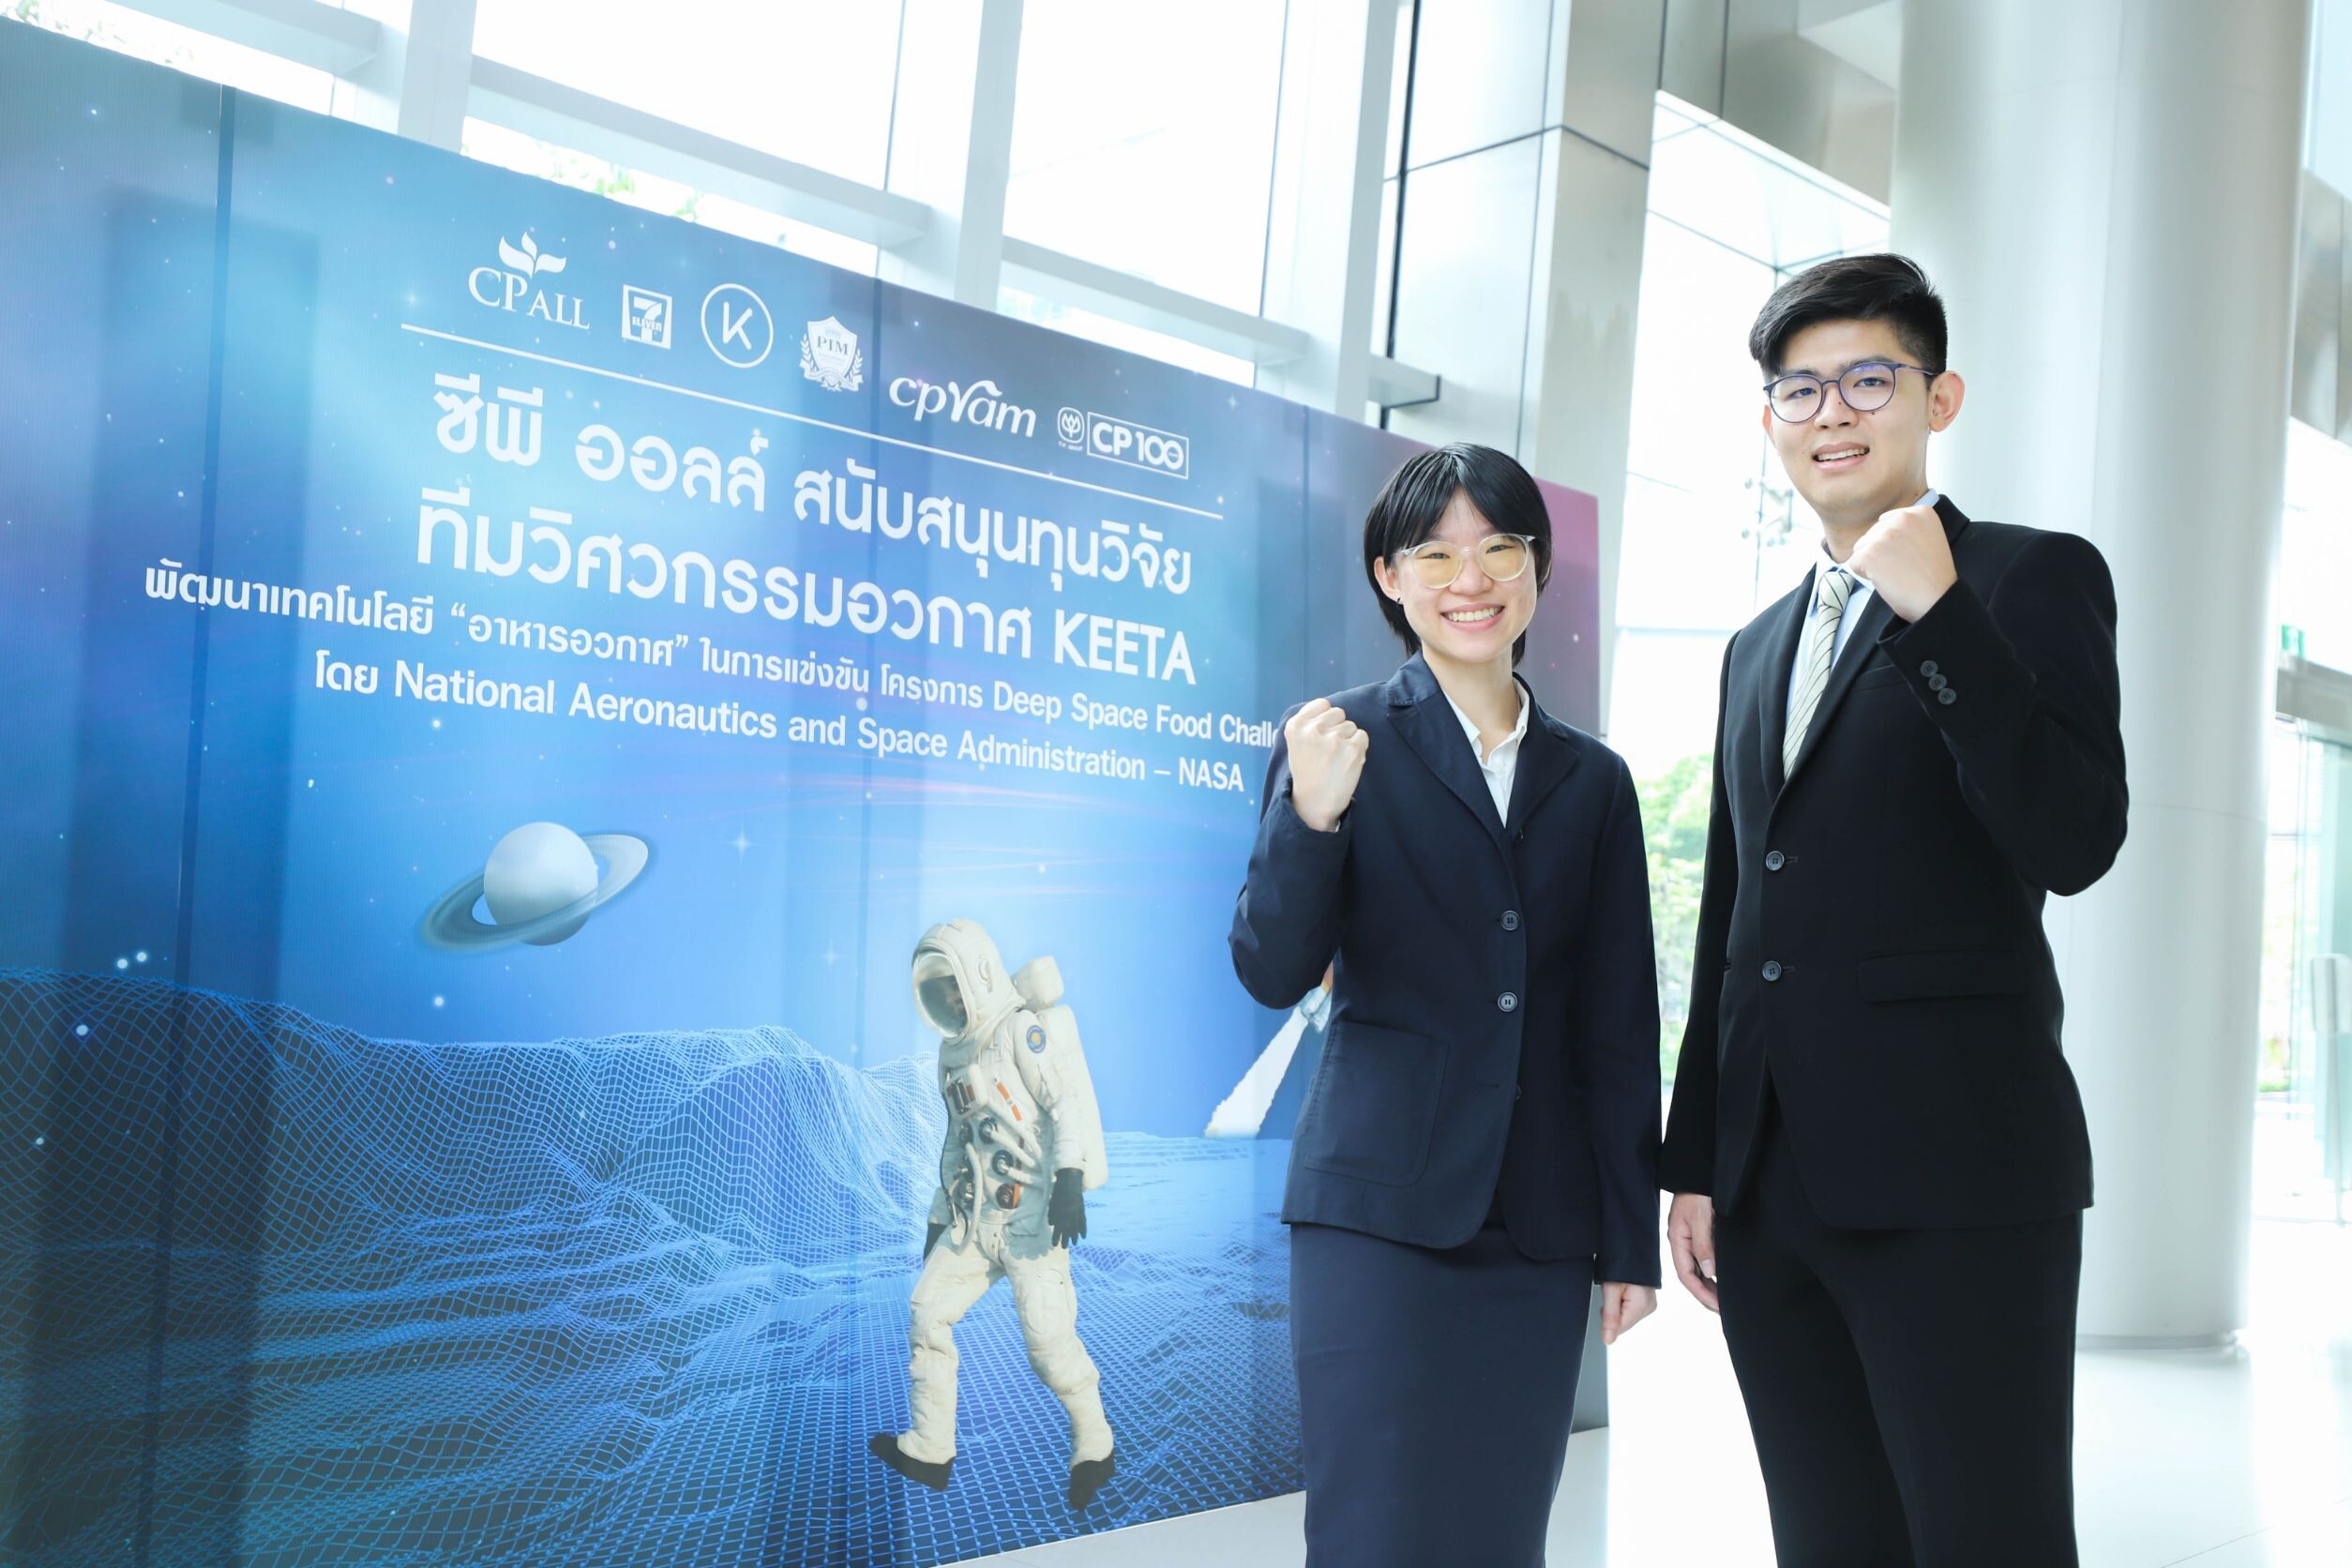 สุดเจ๋ง! เปิดประวัติศาสตร์ใหม่ประเทศไทย "ซีพี ออลล์" หนุนทีมวิศวกรรมอวกาศ "คีตะ" สู่พันธกิจพาภูมิปัญญาอาหารไทยไปอวกาศ กับ NASA